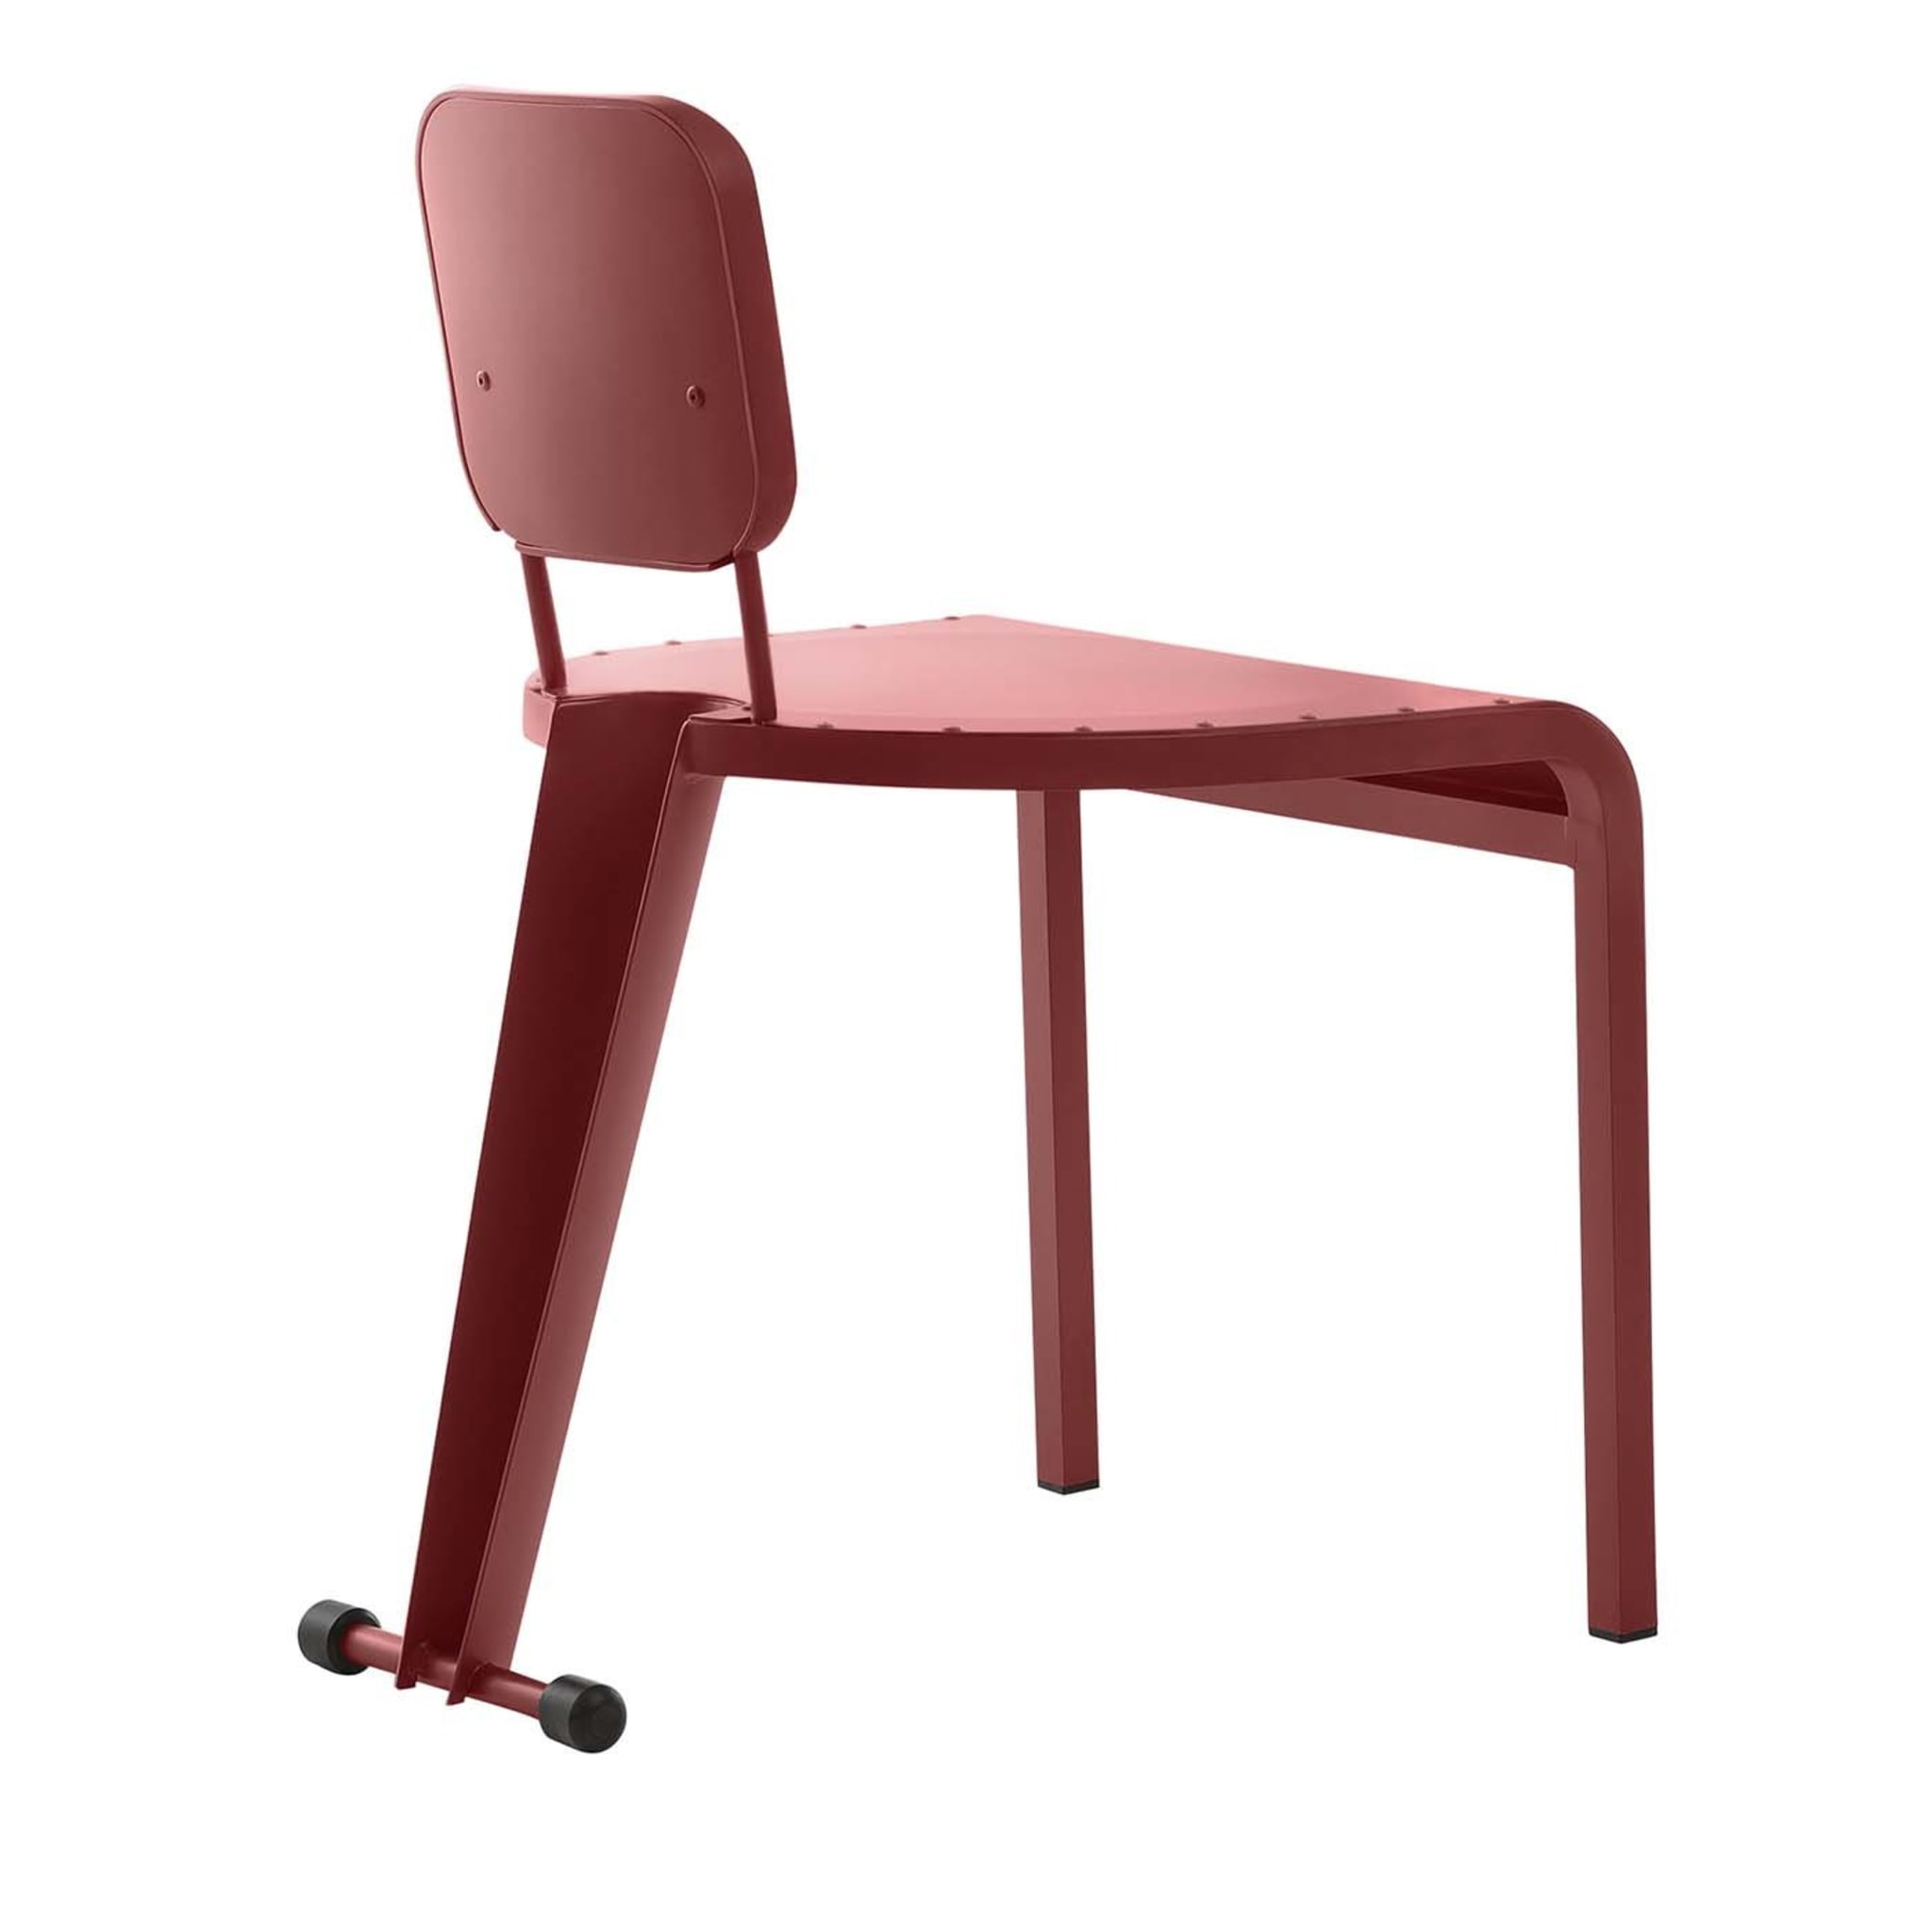 Rock Red Stuhl von Marc Sadler - Hauptansicht